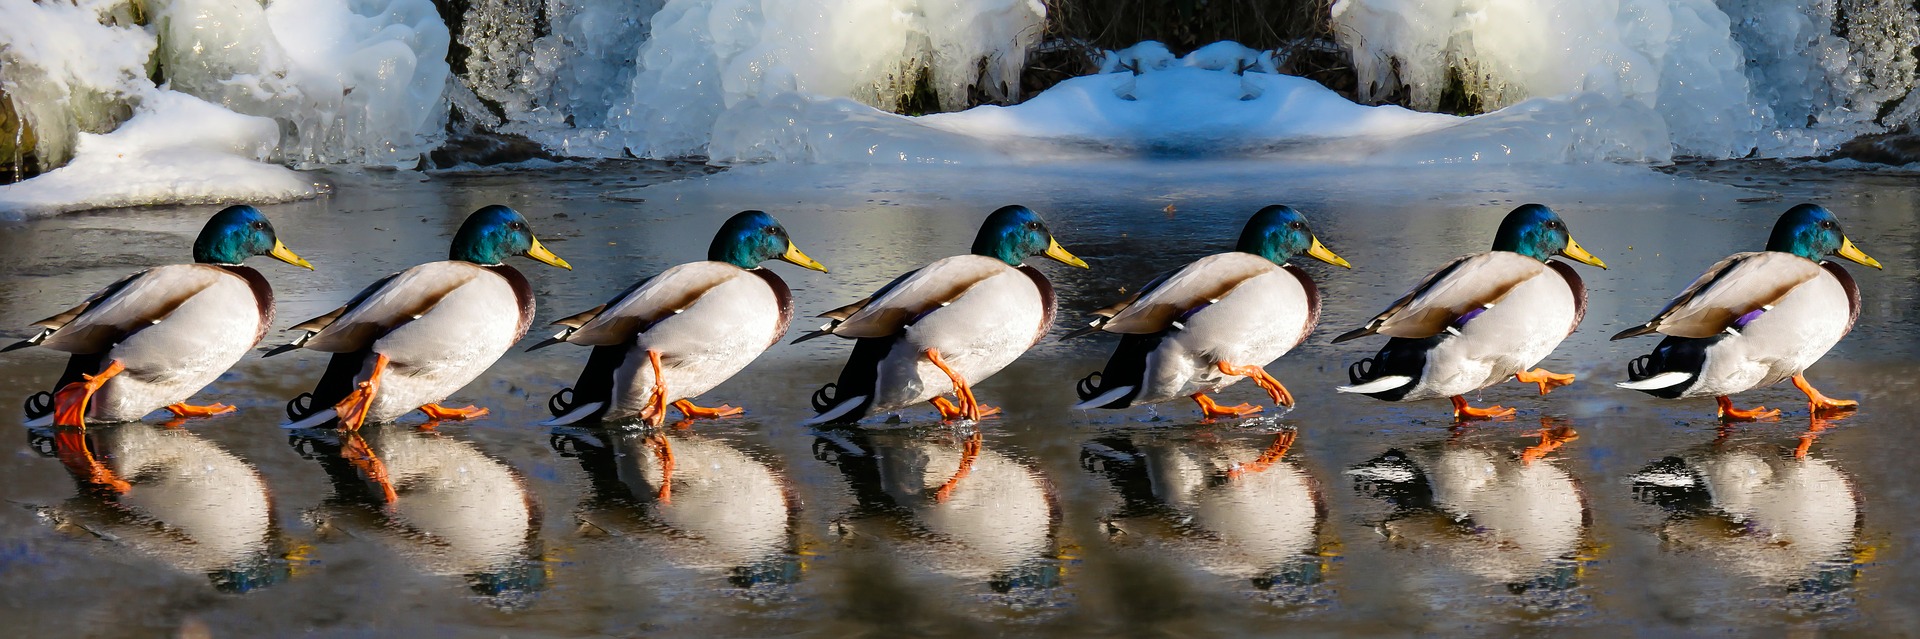 A row of ducks.